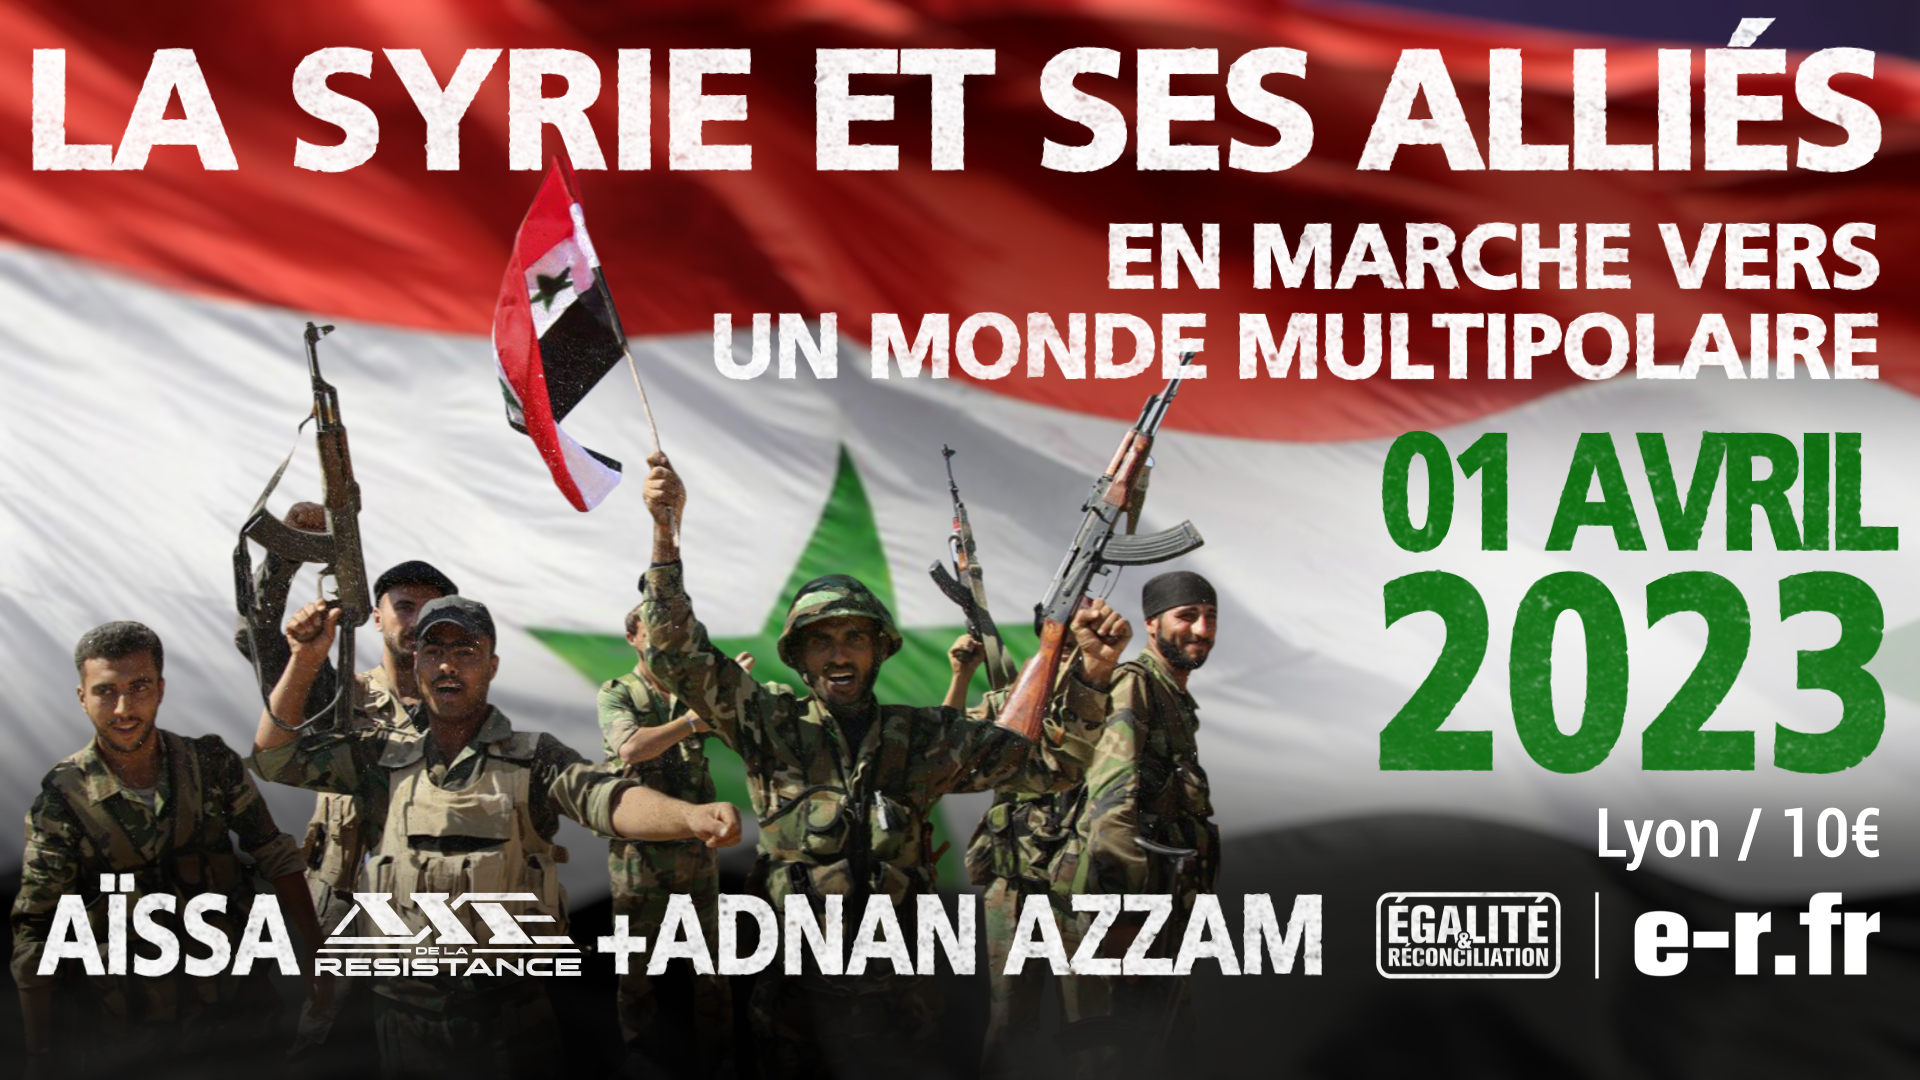 La Syrie et ses alliés en marche vers un monde multipolaire – Conférence d’Aïssa et d’Adnan Azzam à Lyon